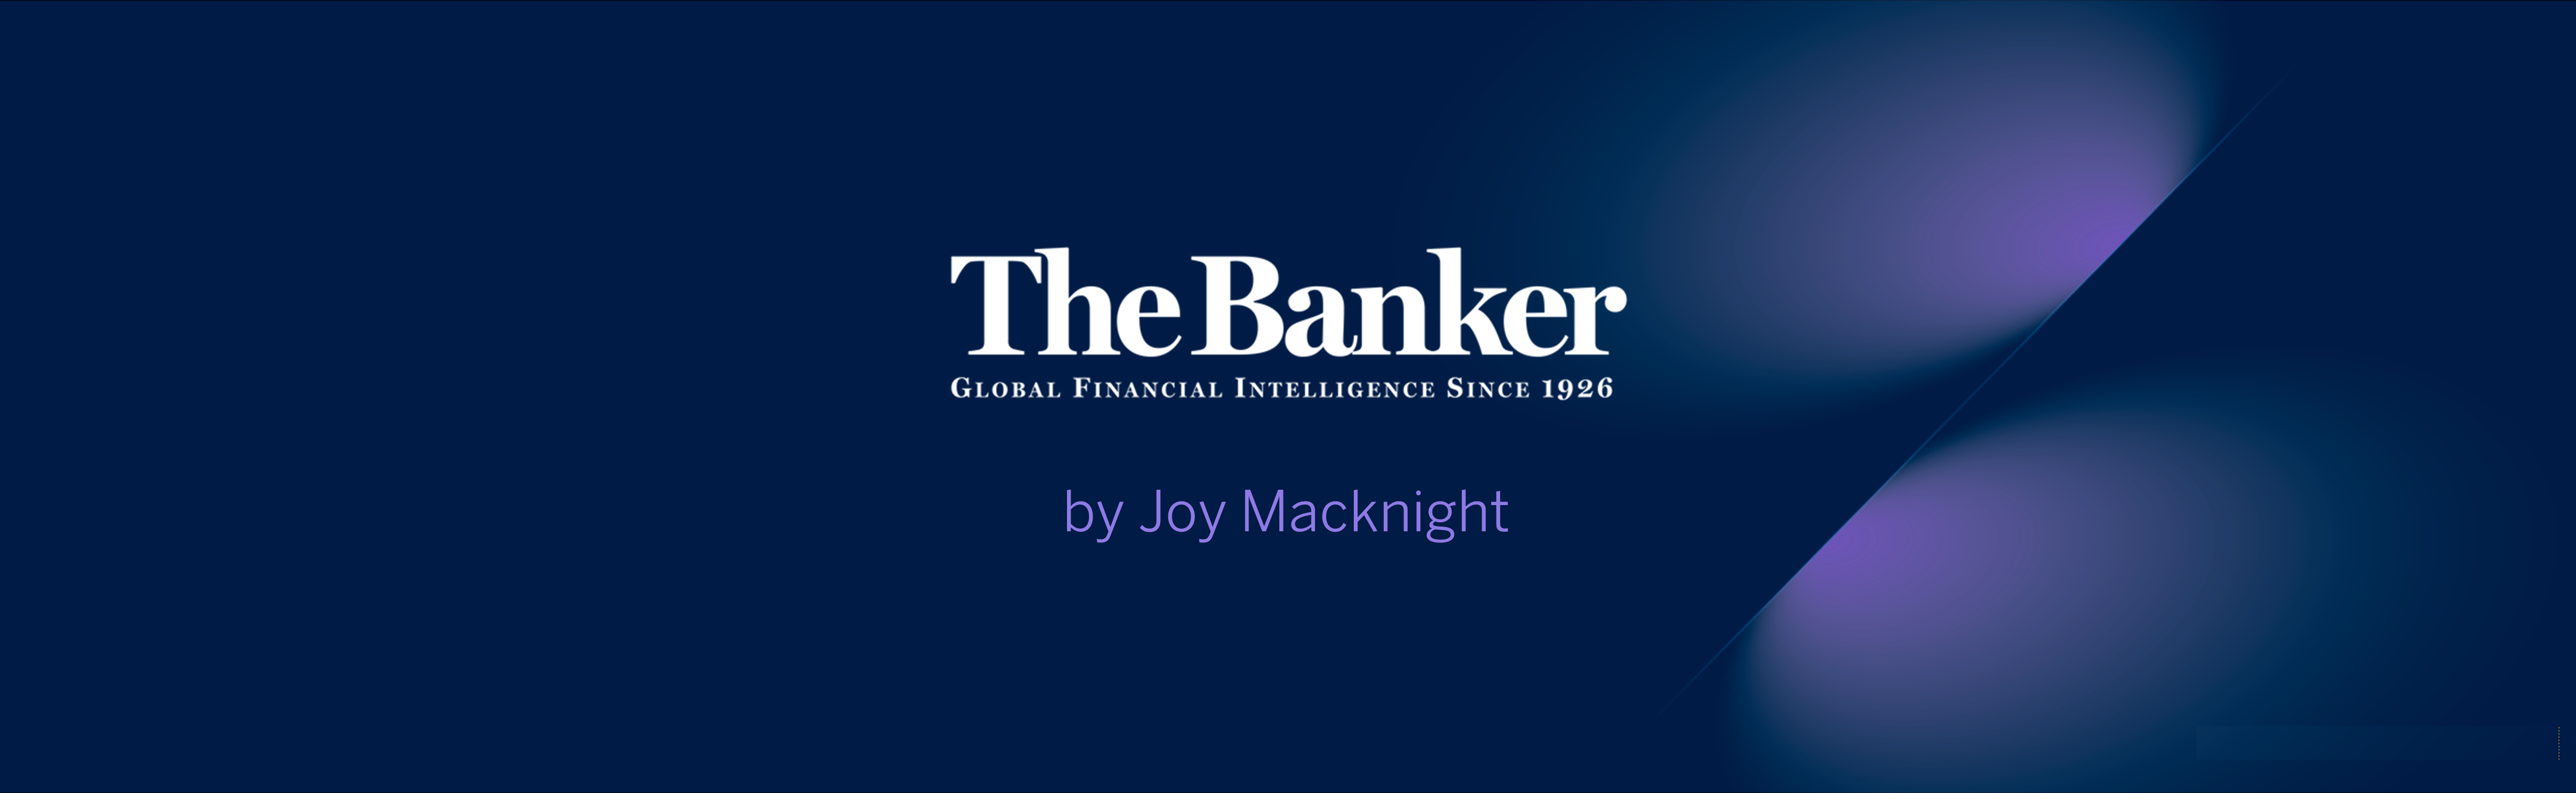 The Banker reconoce el potencial de nuestro servicio cripto